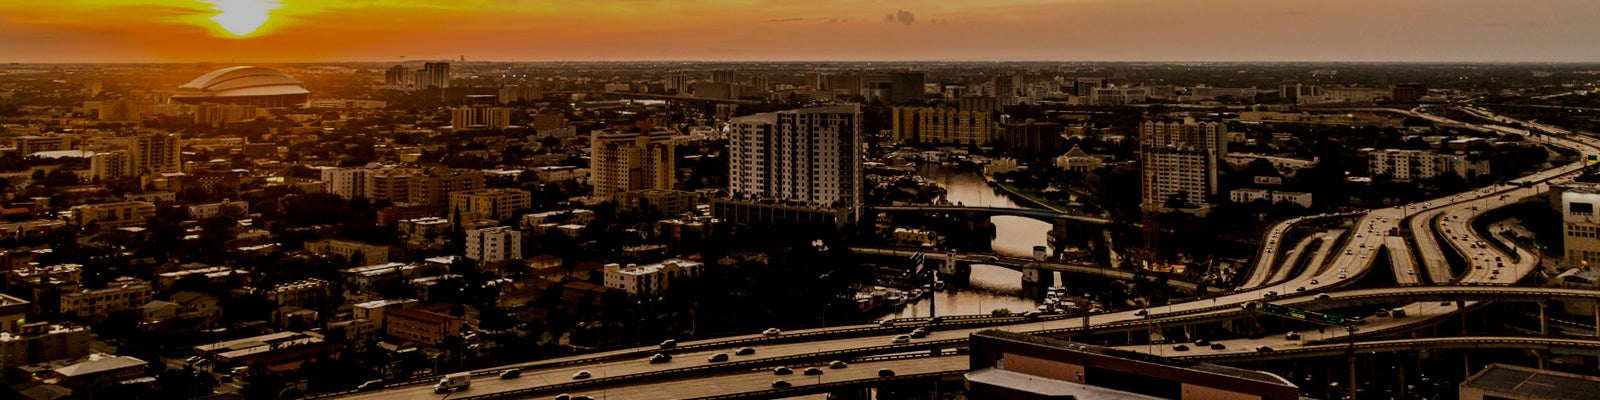 Ciudad de Miami FL